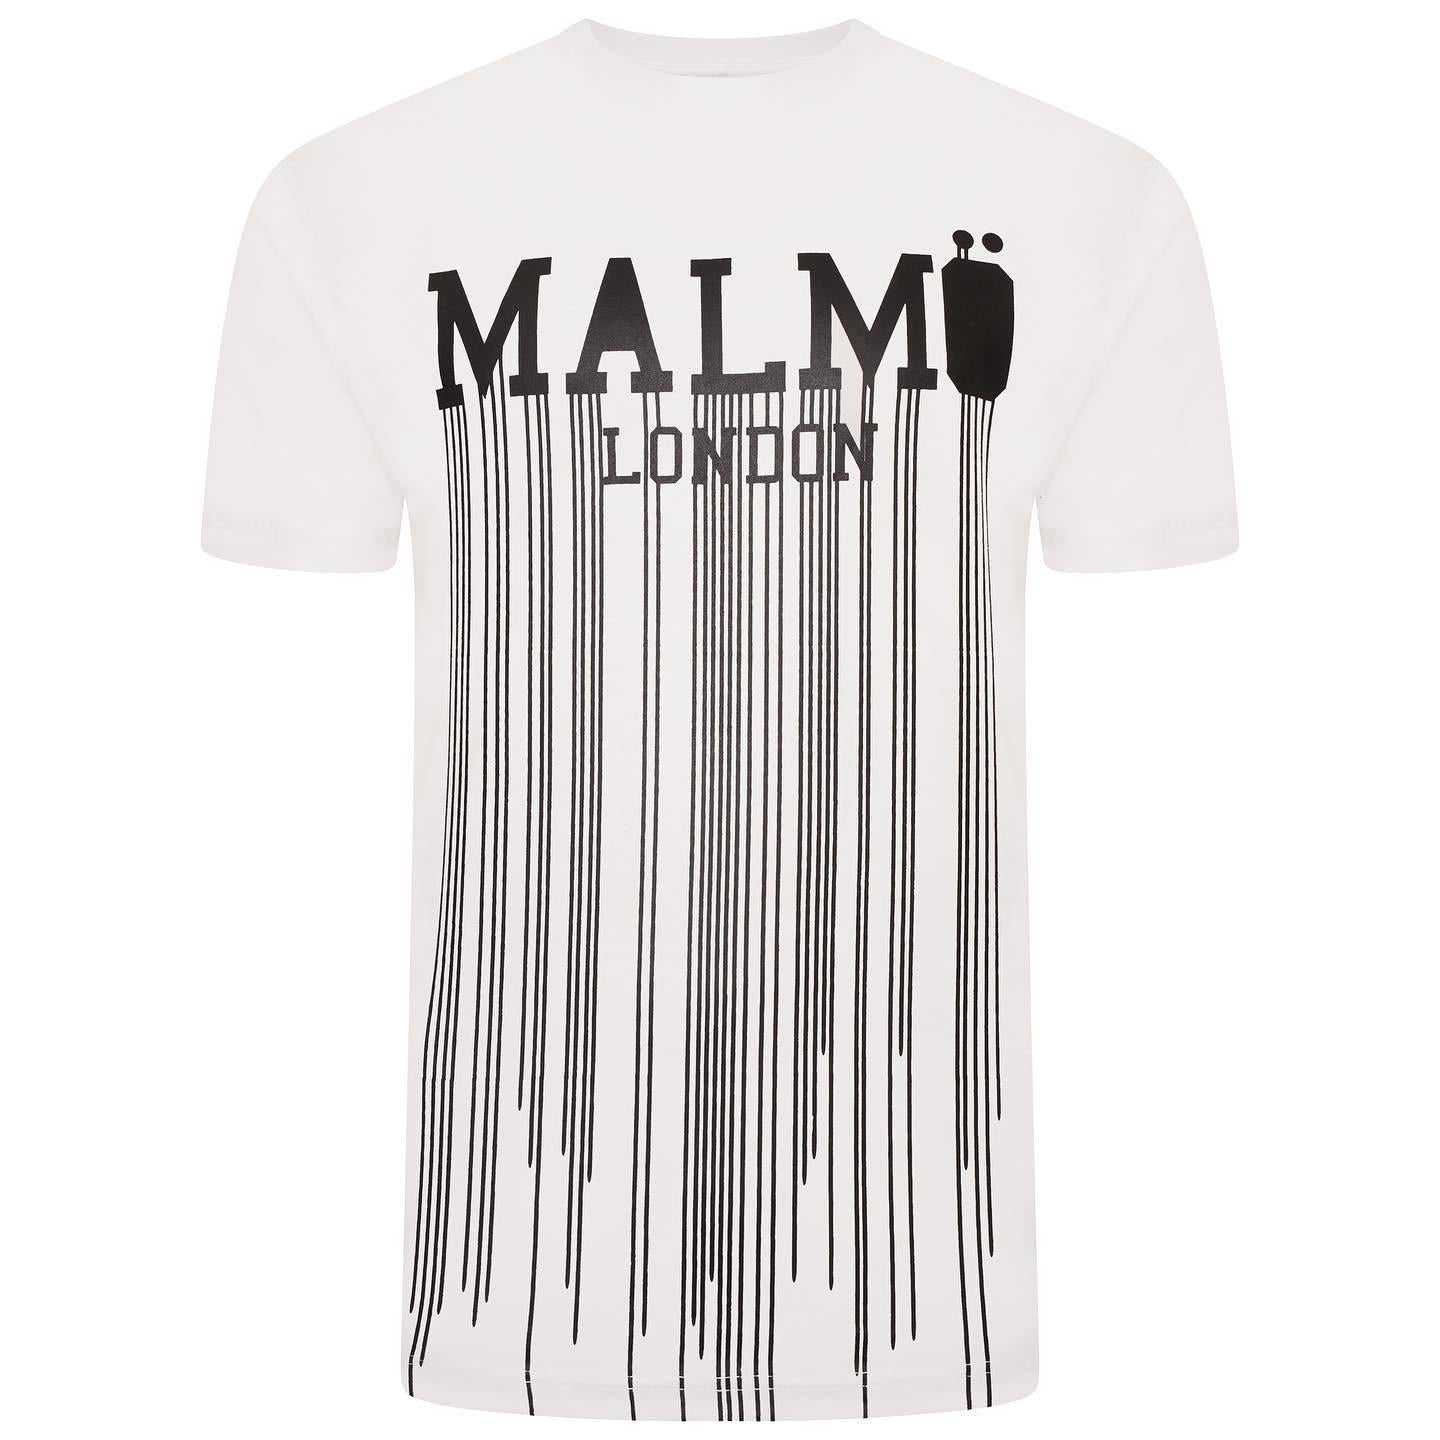 Malmo London White Tshirt